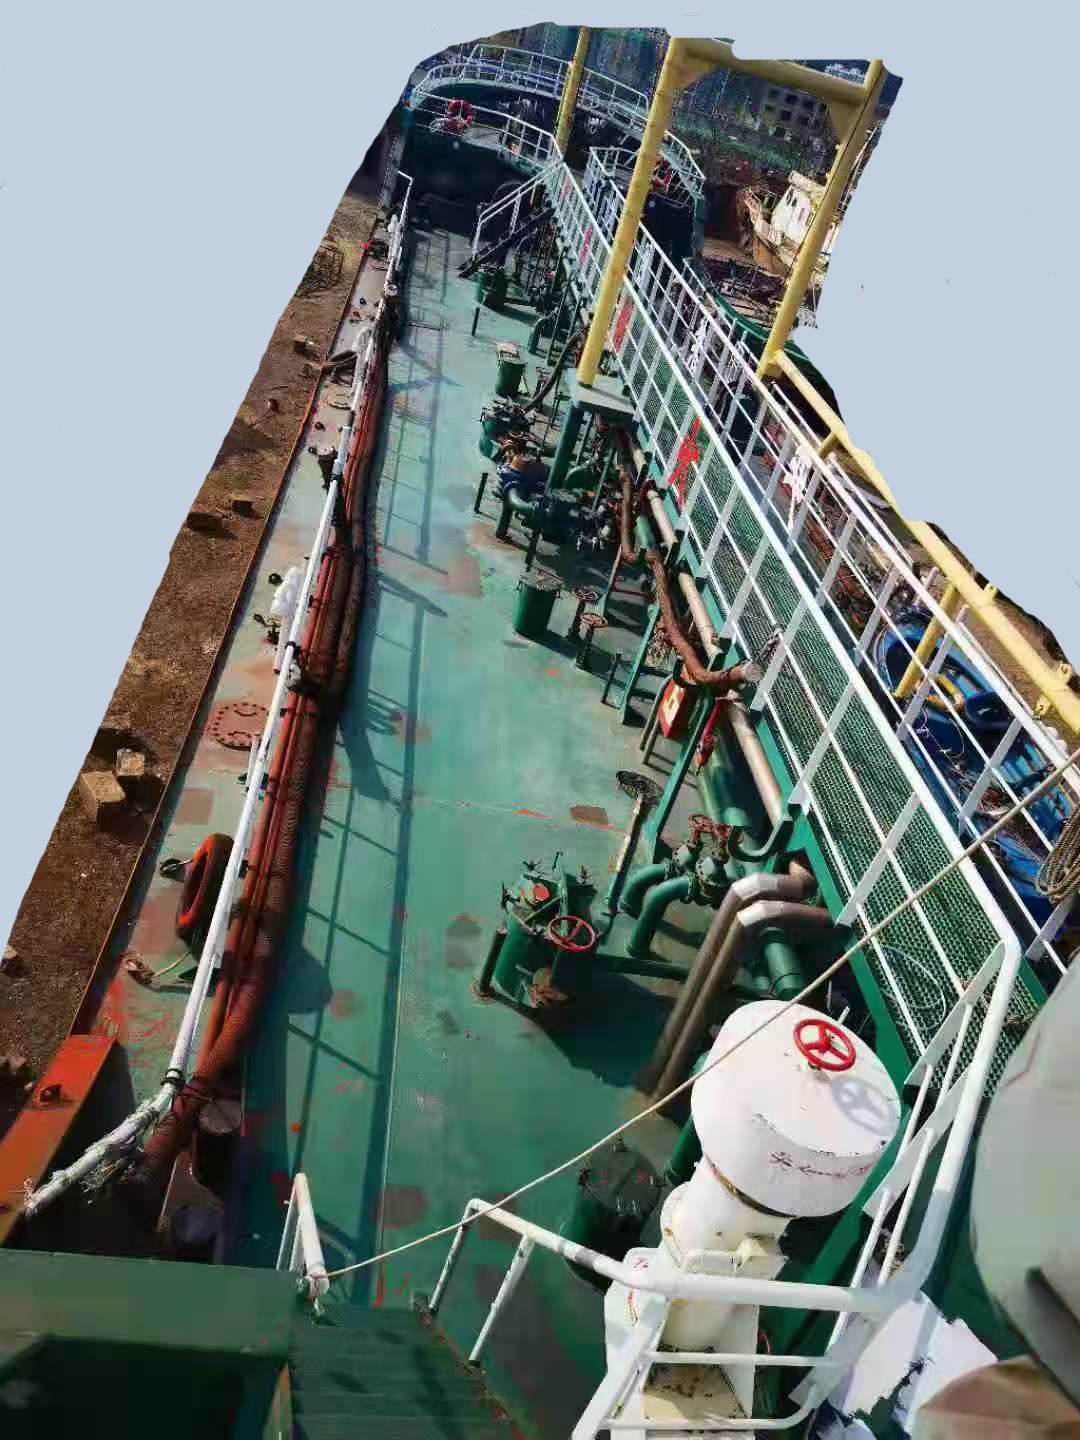 出售2014年853吨交通部运力油船